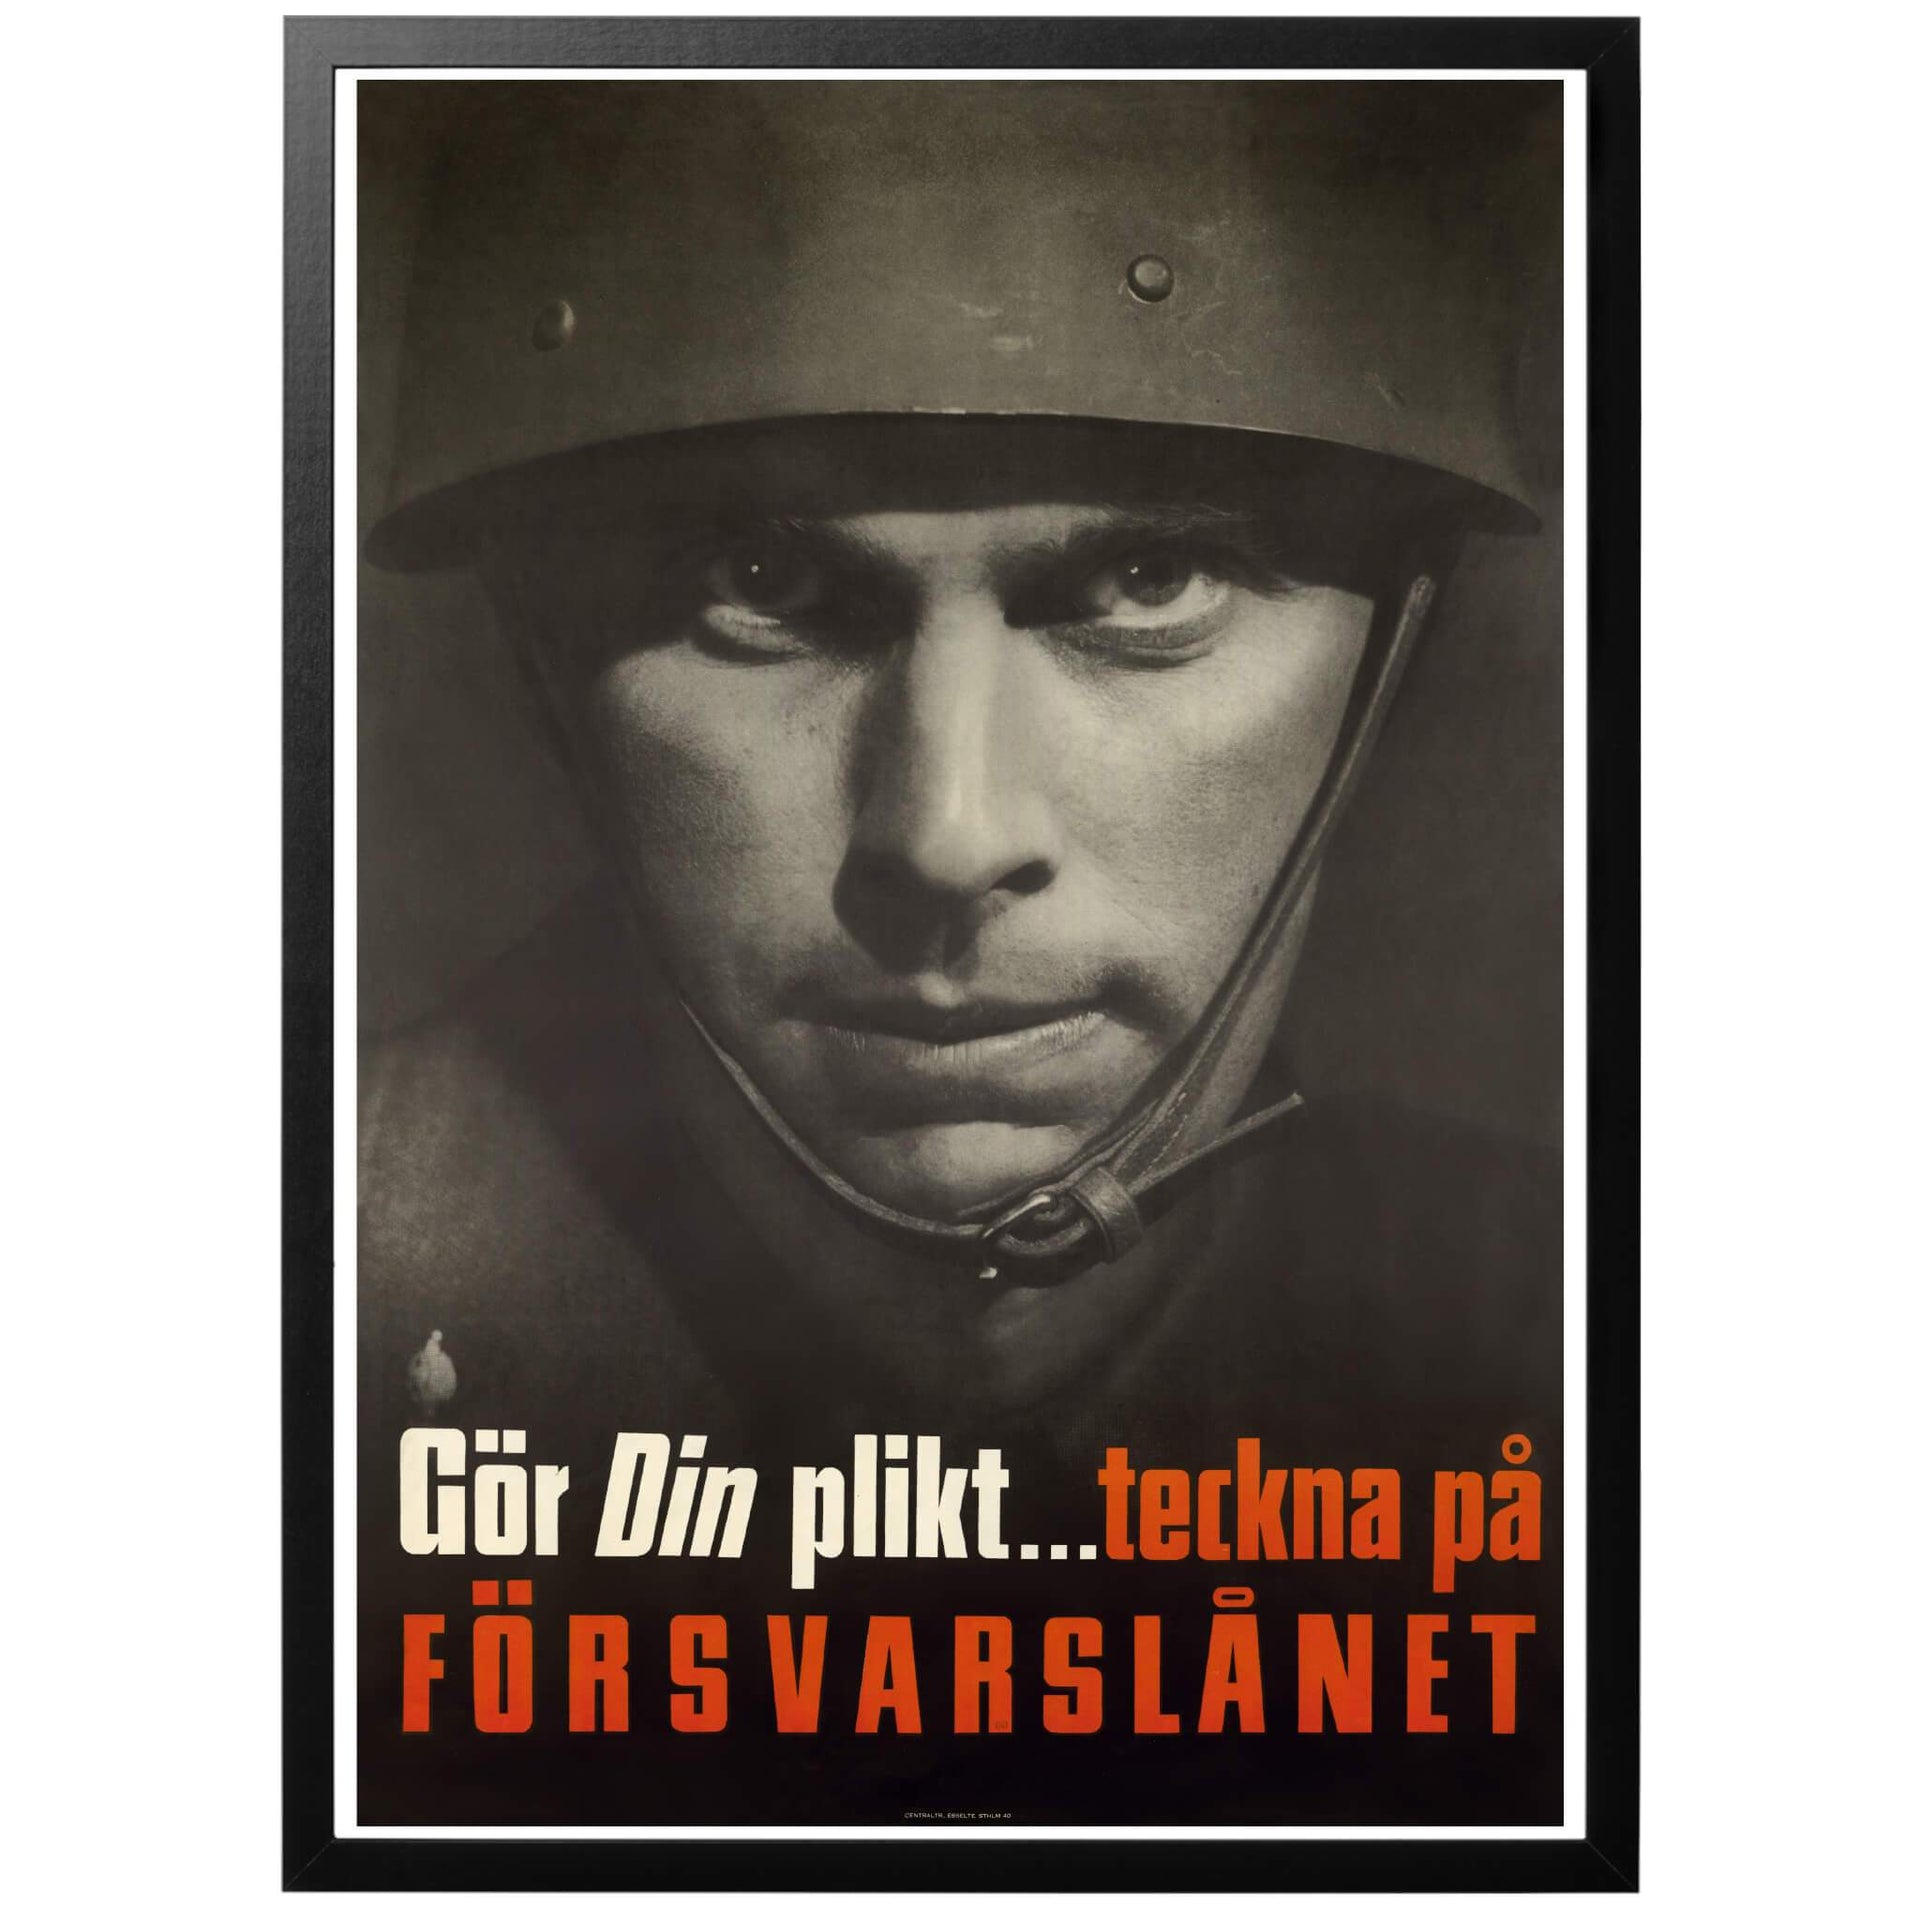 Gör din plikt teckna på försvarslånet Svensk militärposter från 1940. Affischen var en av de som lanserades i första försvarslånskampanjen och föreställde en soldat som vädjar till folket att göra sin plikt och köpa försvarsobligationer.